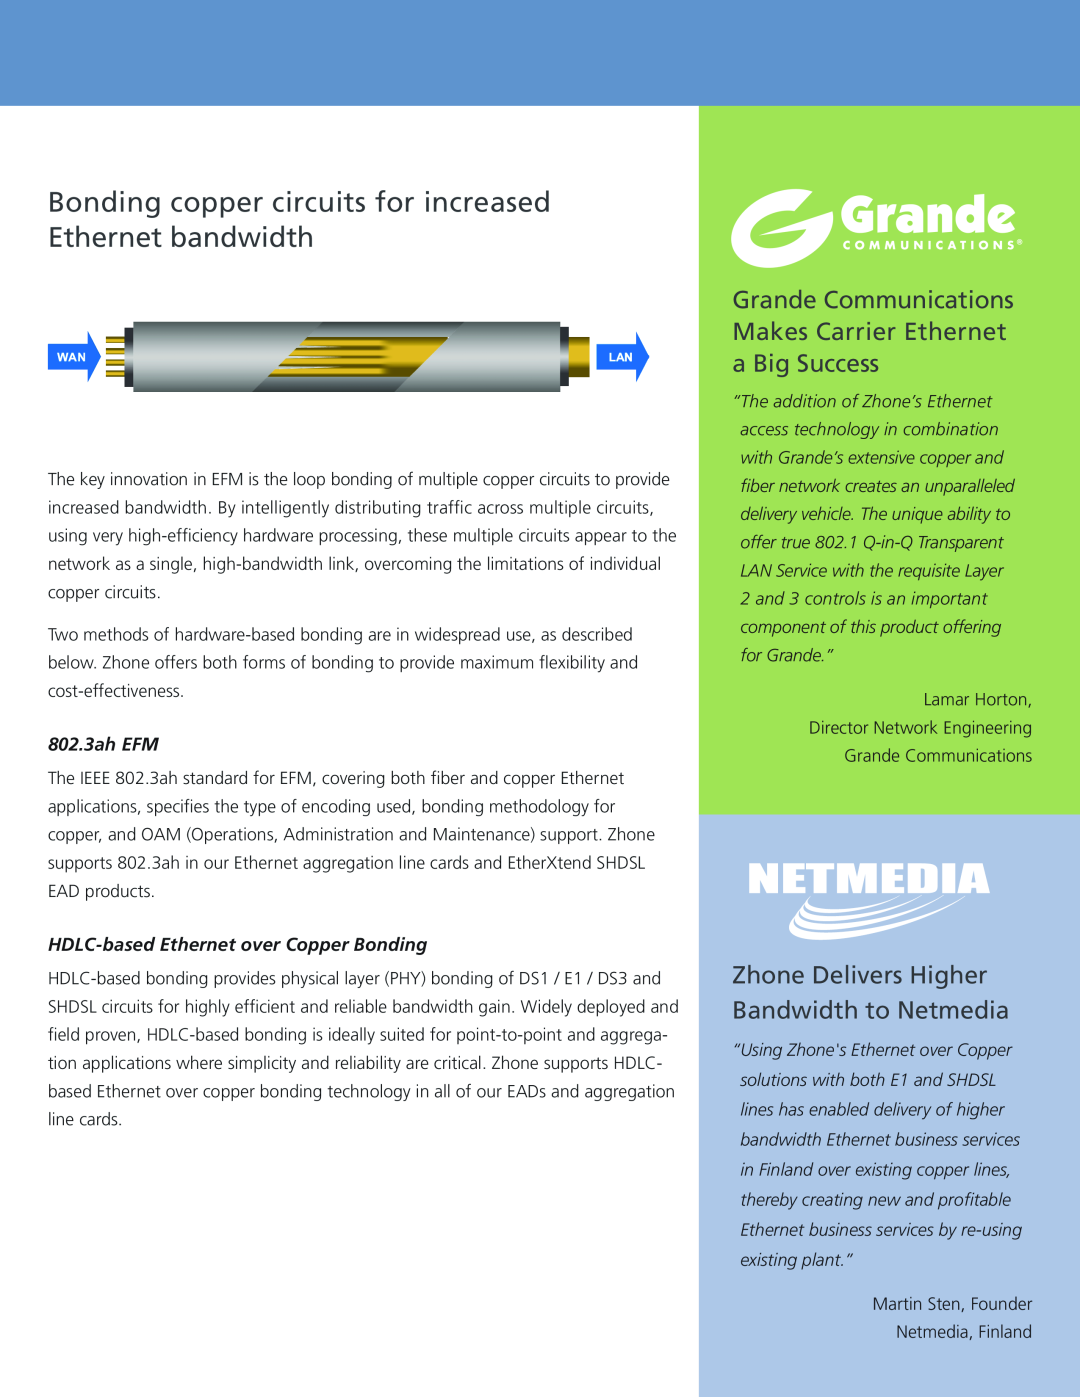 Zhone Technologies Copper-Based Ethernet manual 802.3ah EFM, HDLC-based Ethernet over Copper Bonding 